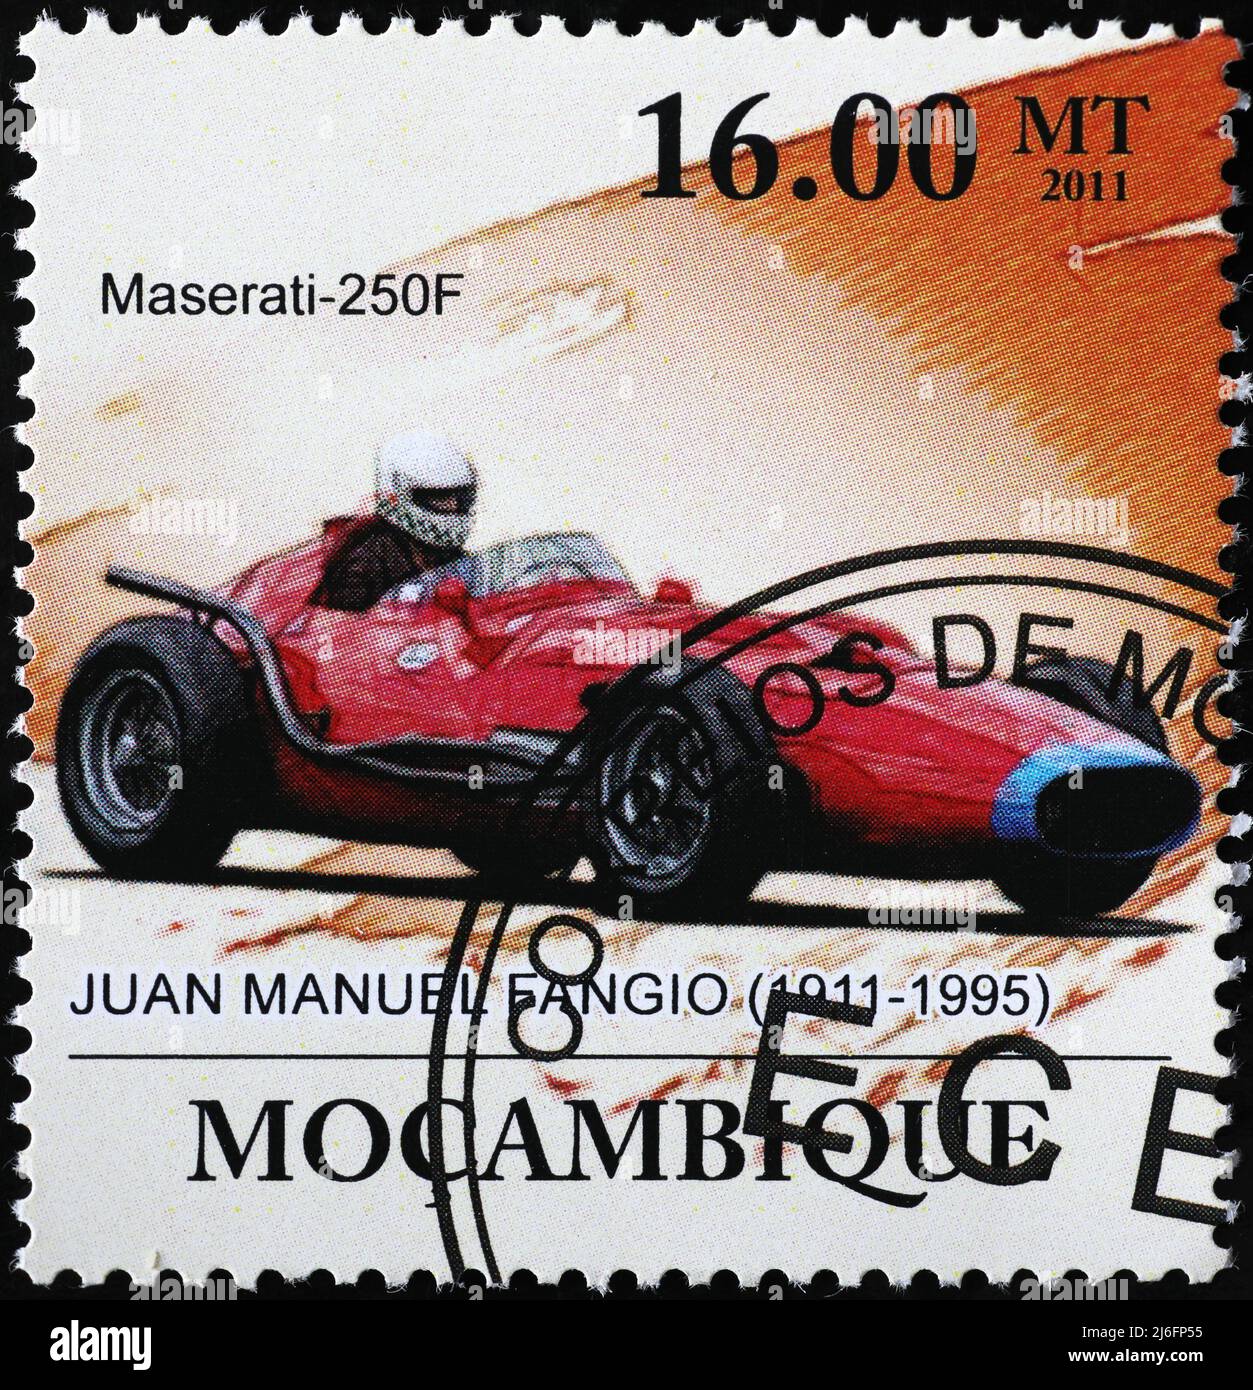 1982 Monaco 40th Grand Prix Automobile Race Car Advertisement Vintage Poster 